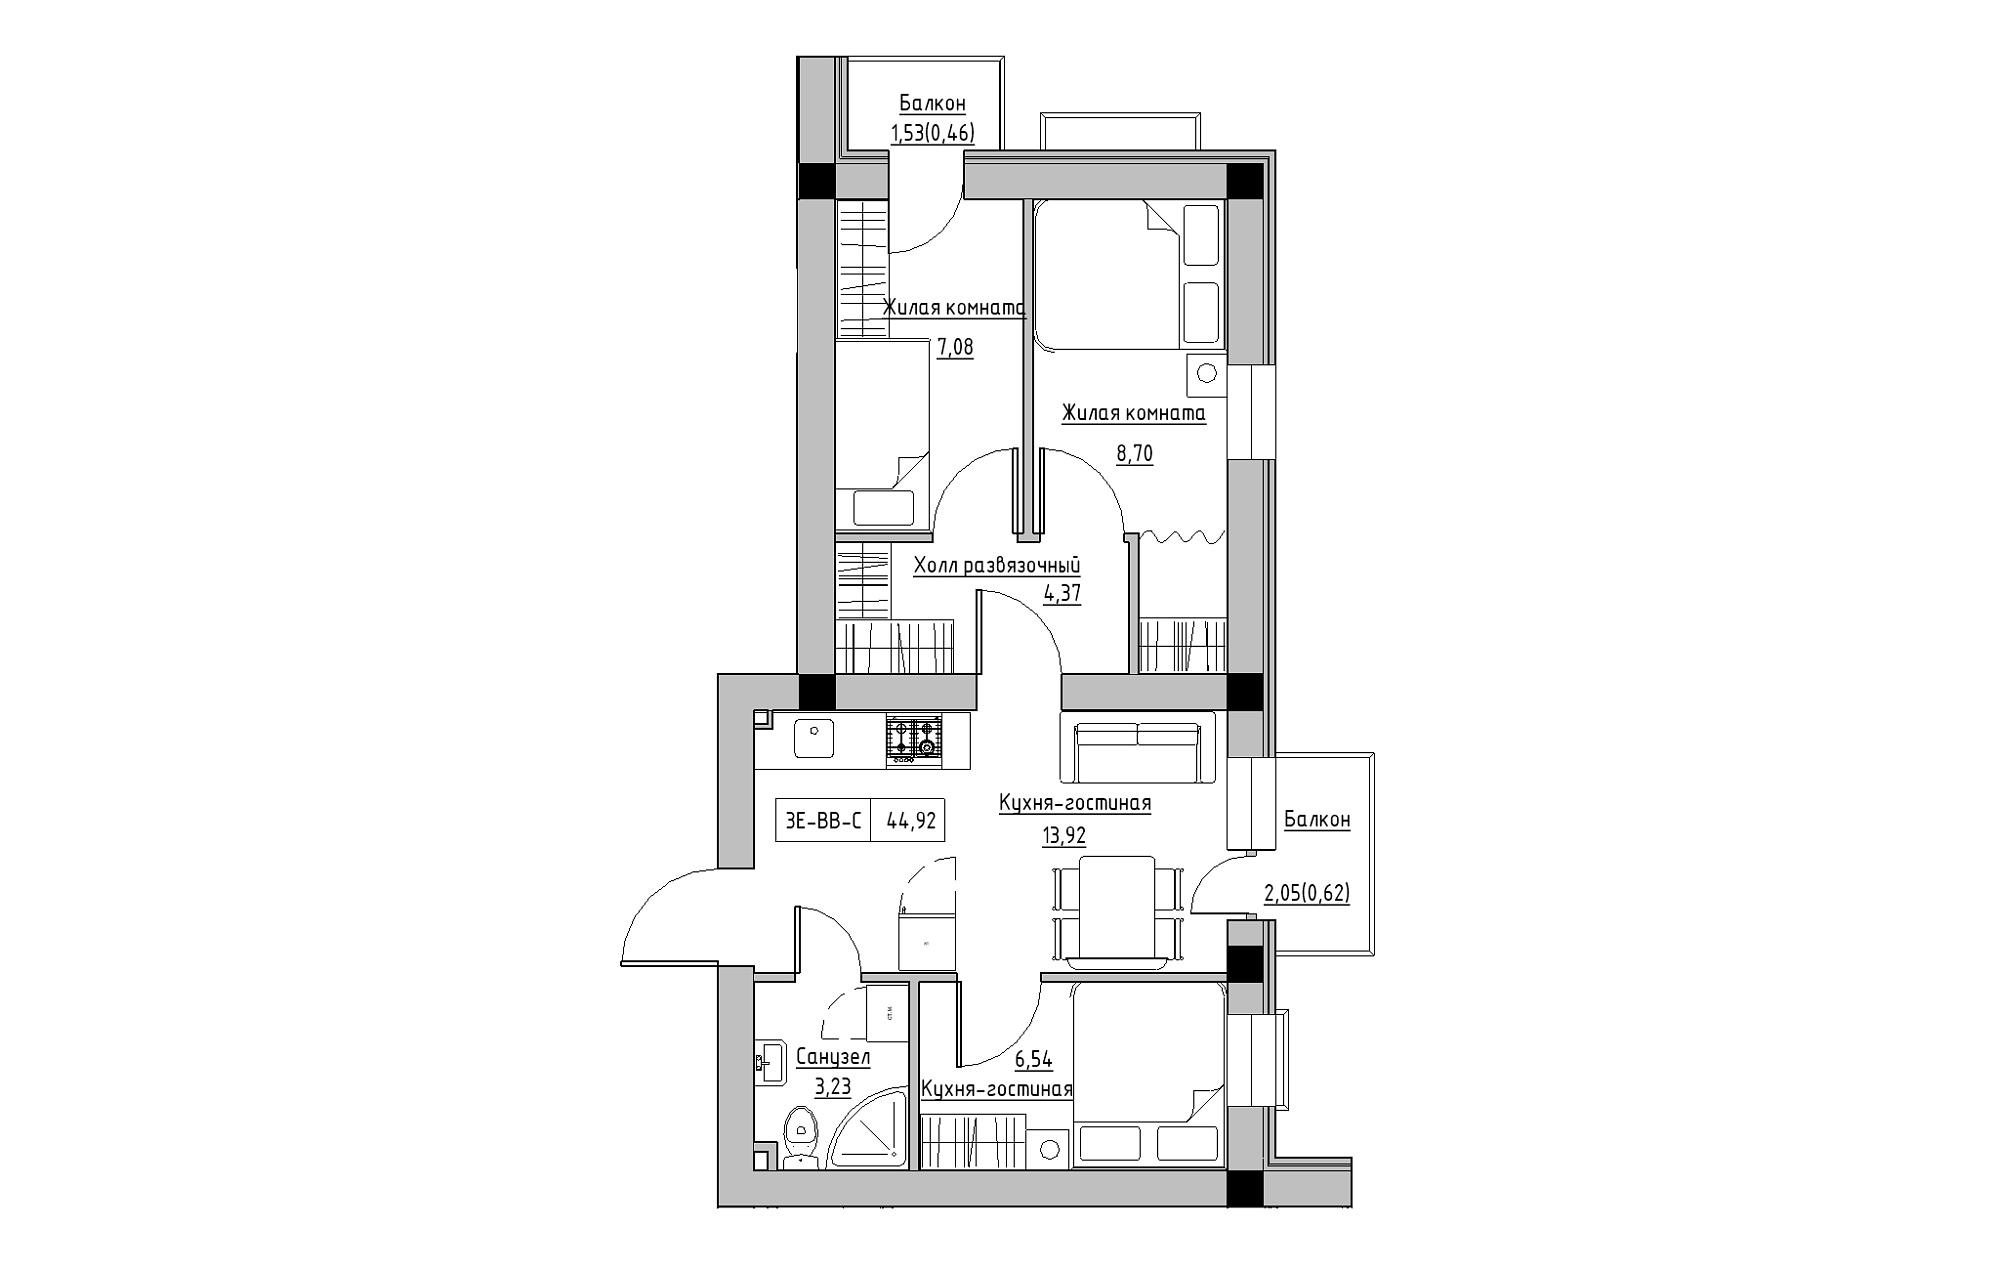 Планування 3-к квартира площею 44.92м2, KS-018-05/0011.